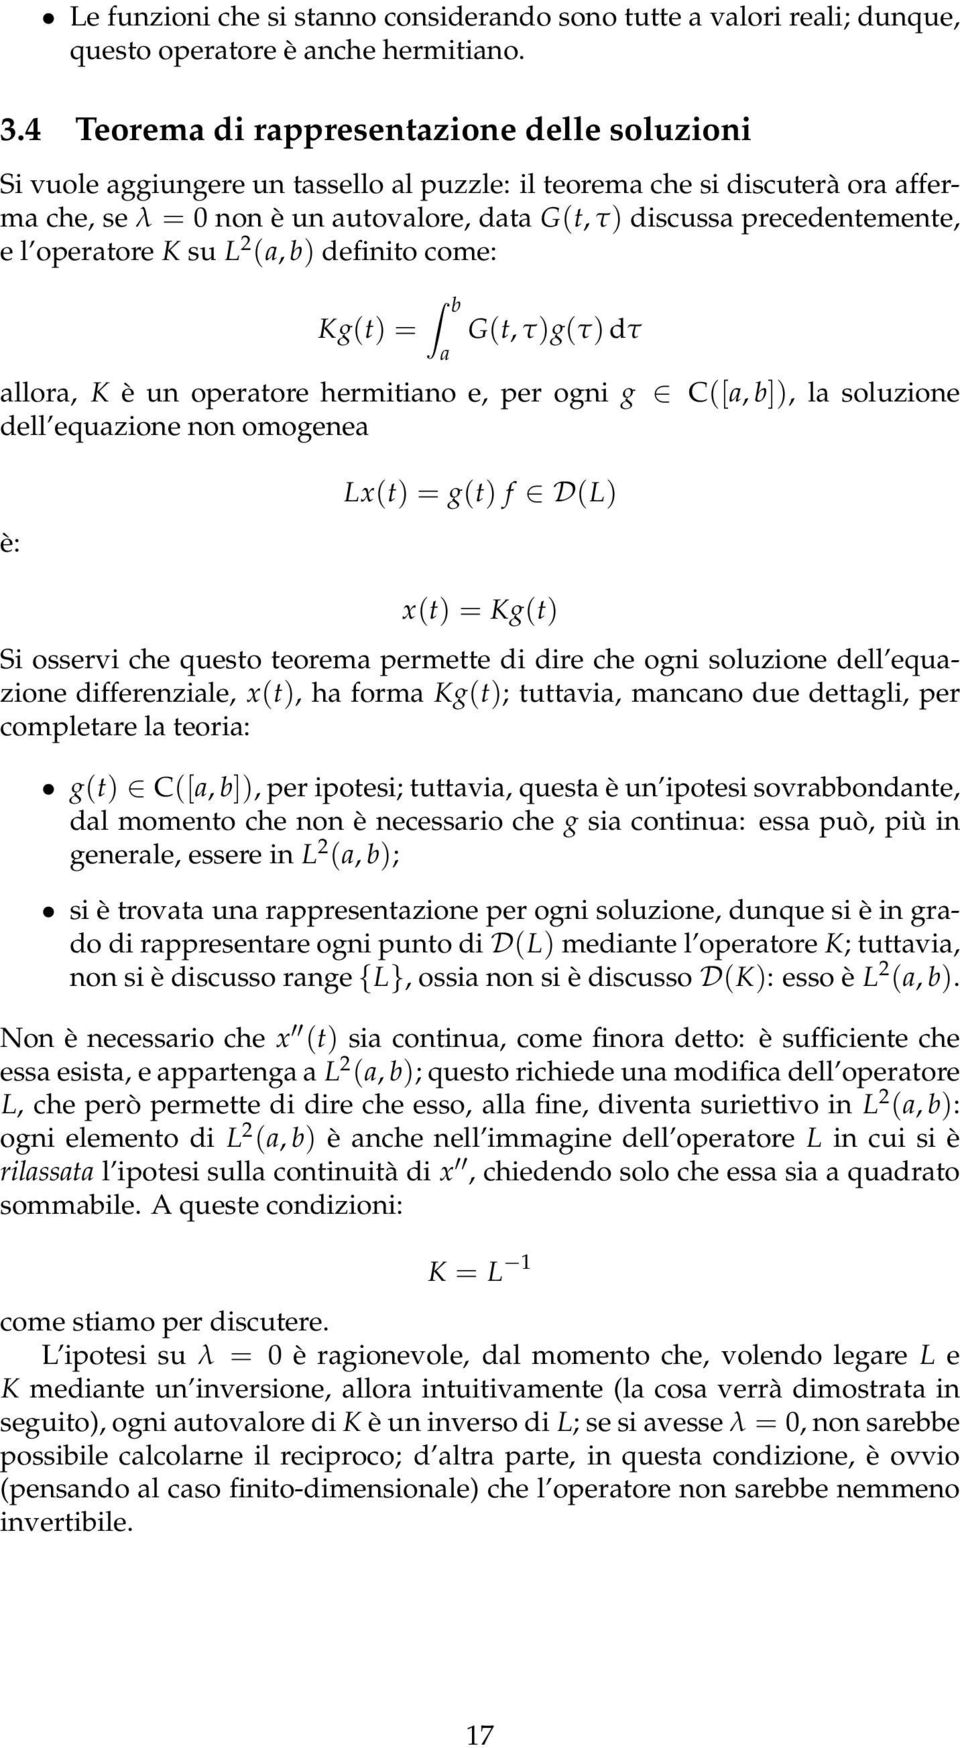 opertore K su L 2 (, b) definito come: Kg(t) = G(t, τ)g(τ) dτ llor, K è un opertore hermitino e, per ogni g C([, b]), l soluzione dell equzione non omogene è: Lx(t) = g(t) f D(L) x(t) = Kg(t) Si